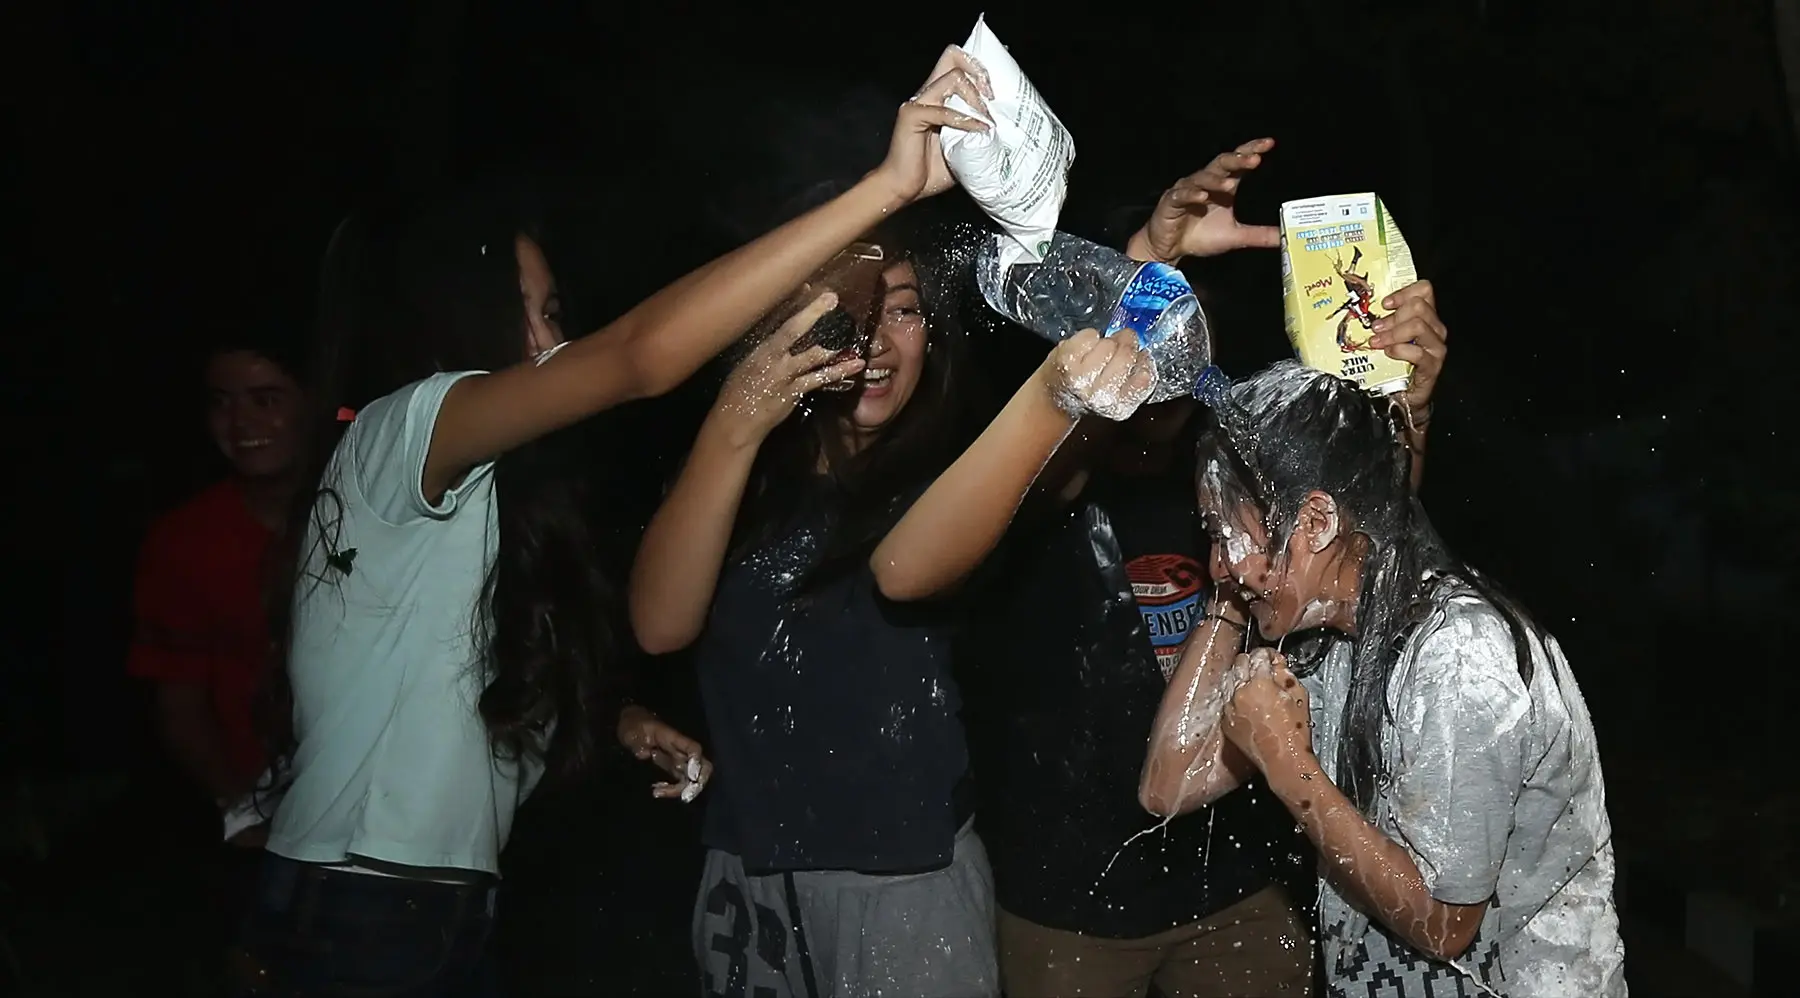 Tak puas hanya dengan tepung terigu, sejumlah teman-teman Syifa juga membasahi Syifa dengan air mineral dan air susu. (Bambang E Ros/Bintang.com)